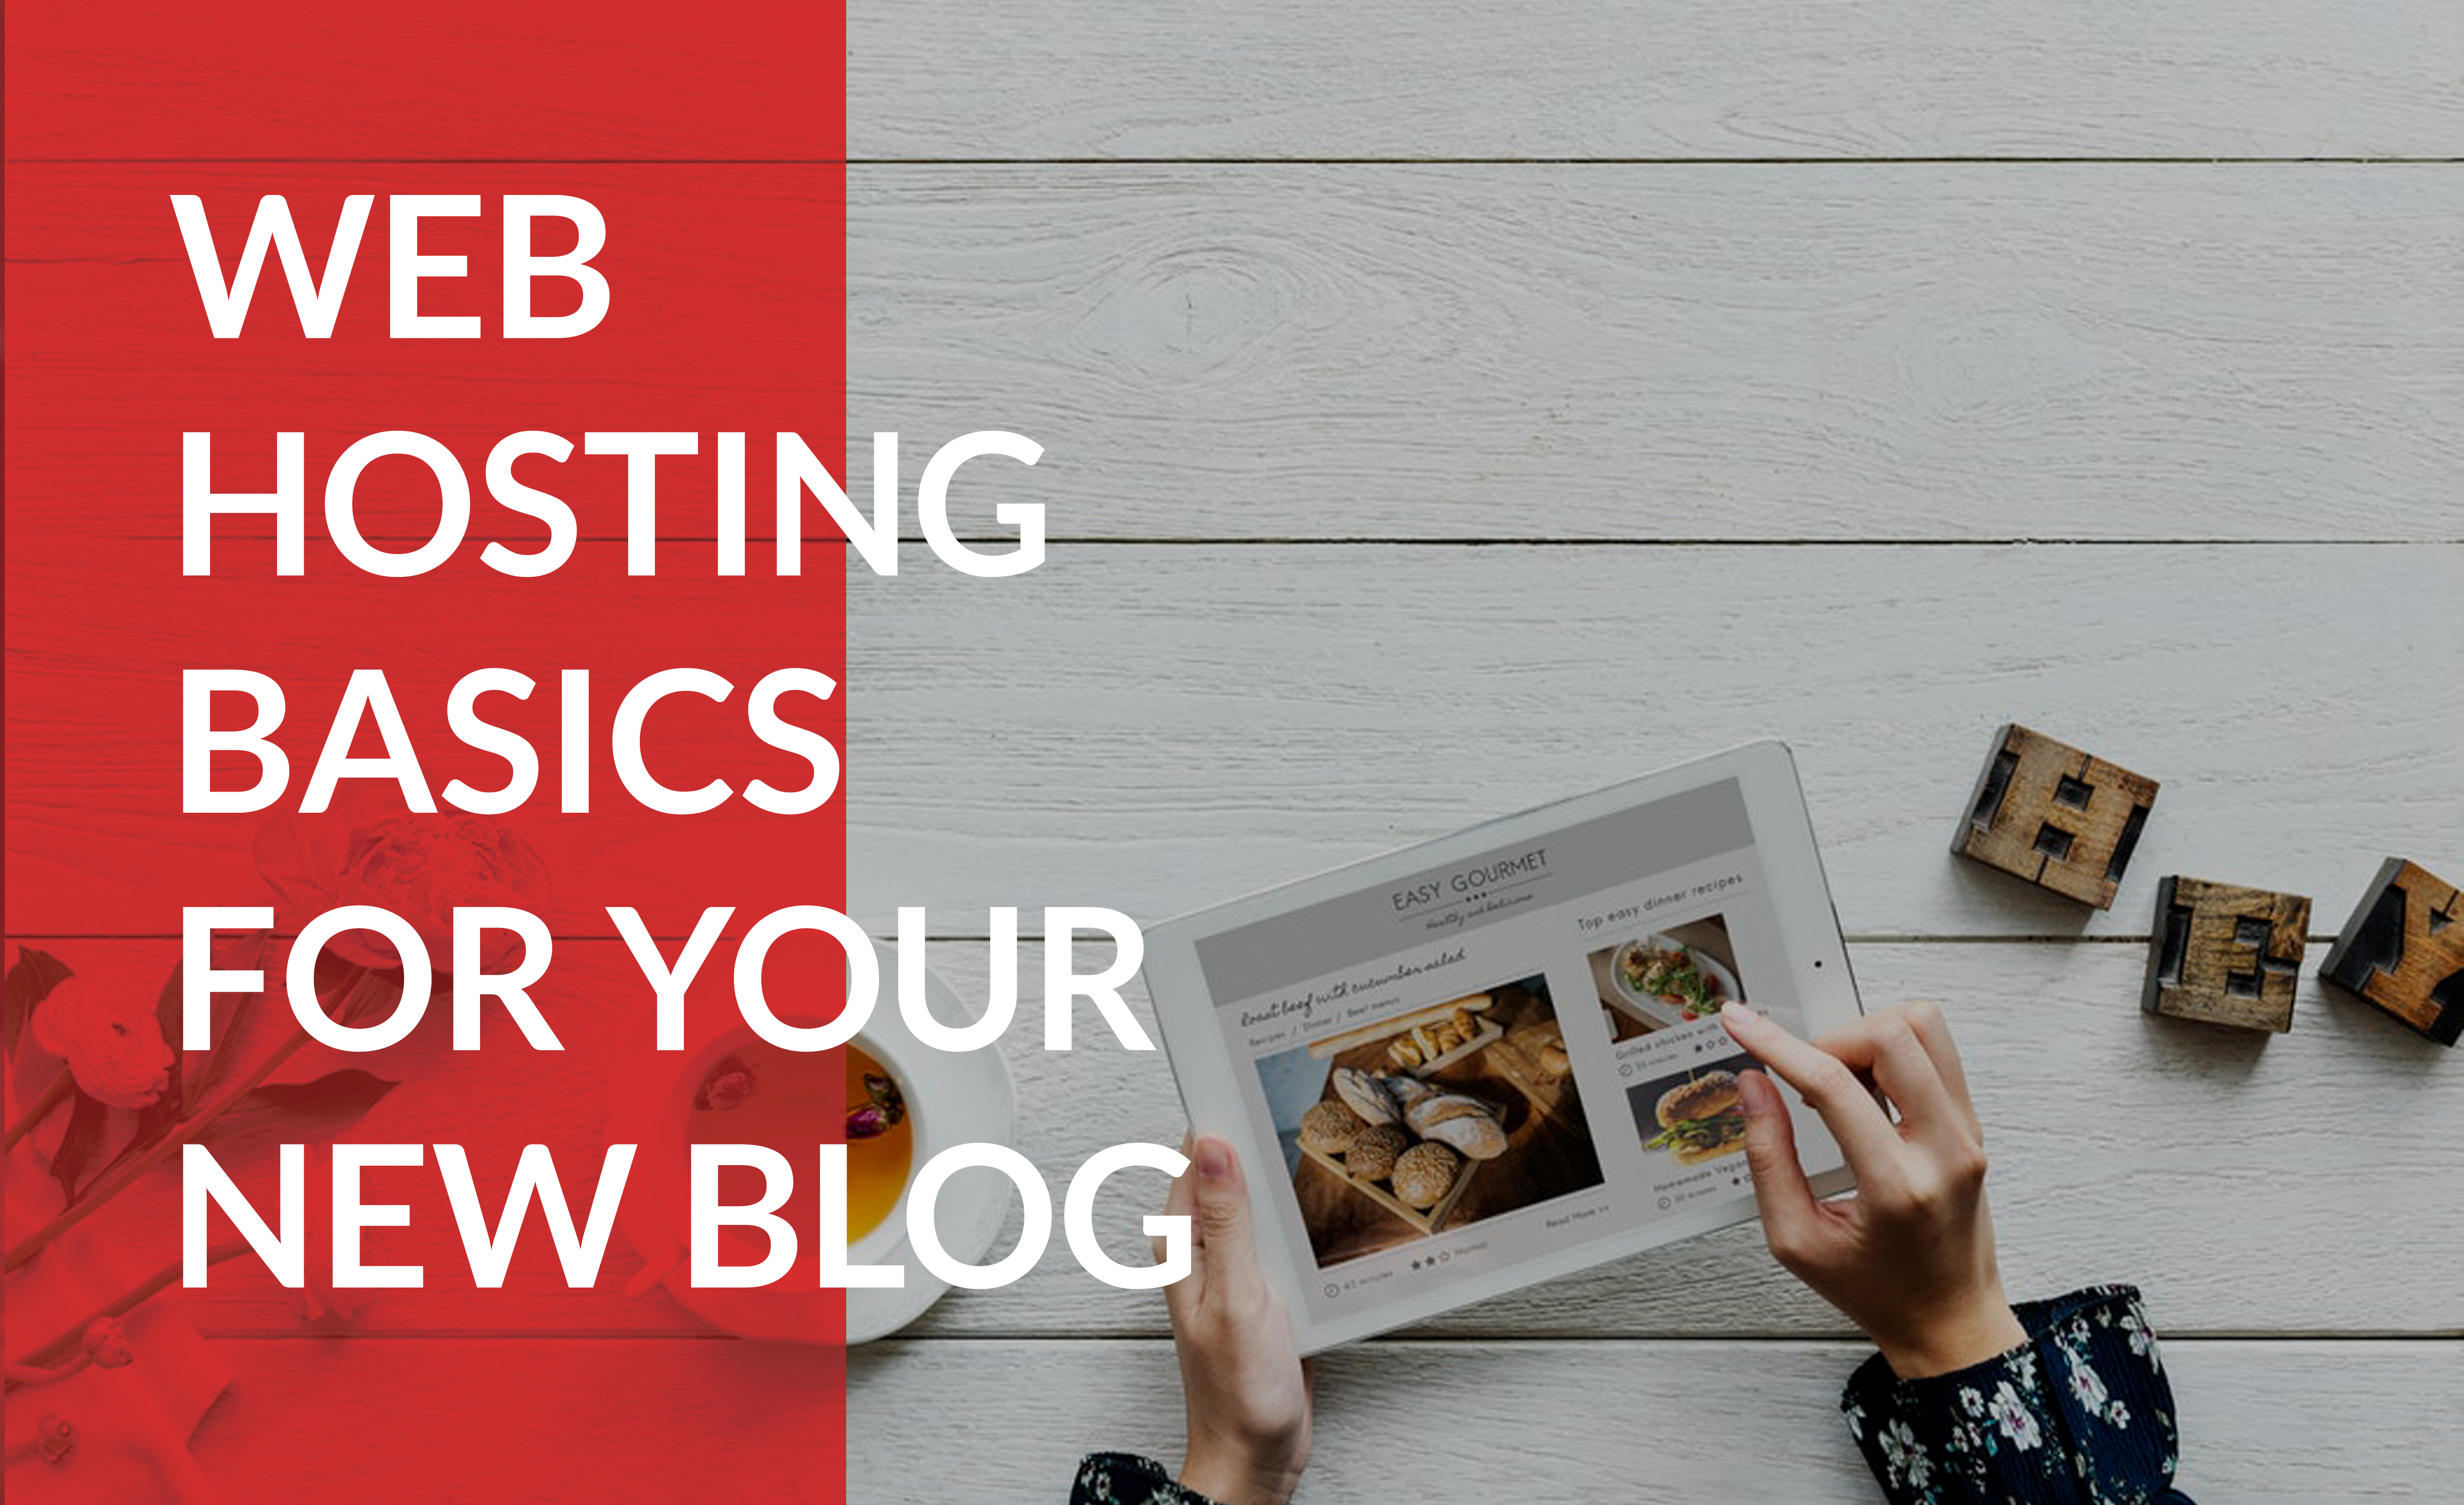 Understand basic web hosting for your blog.